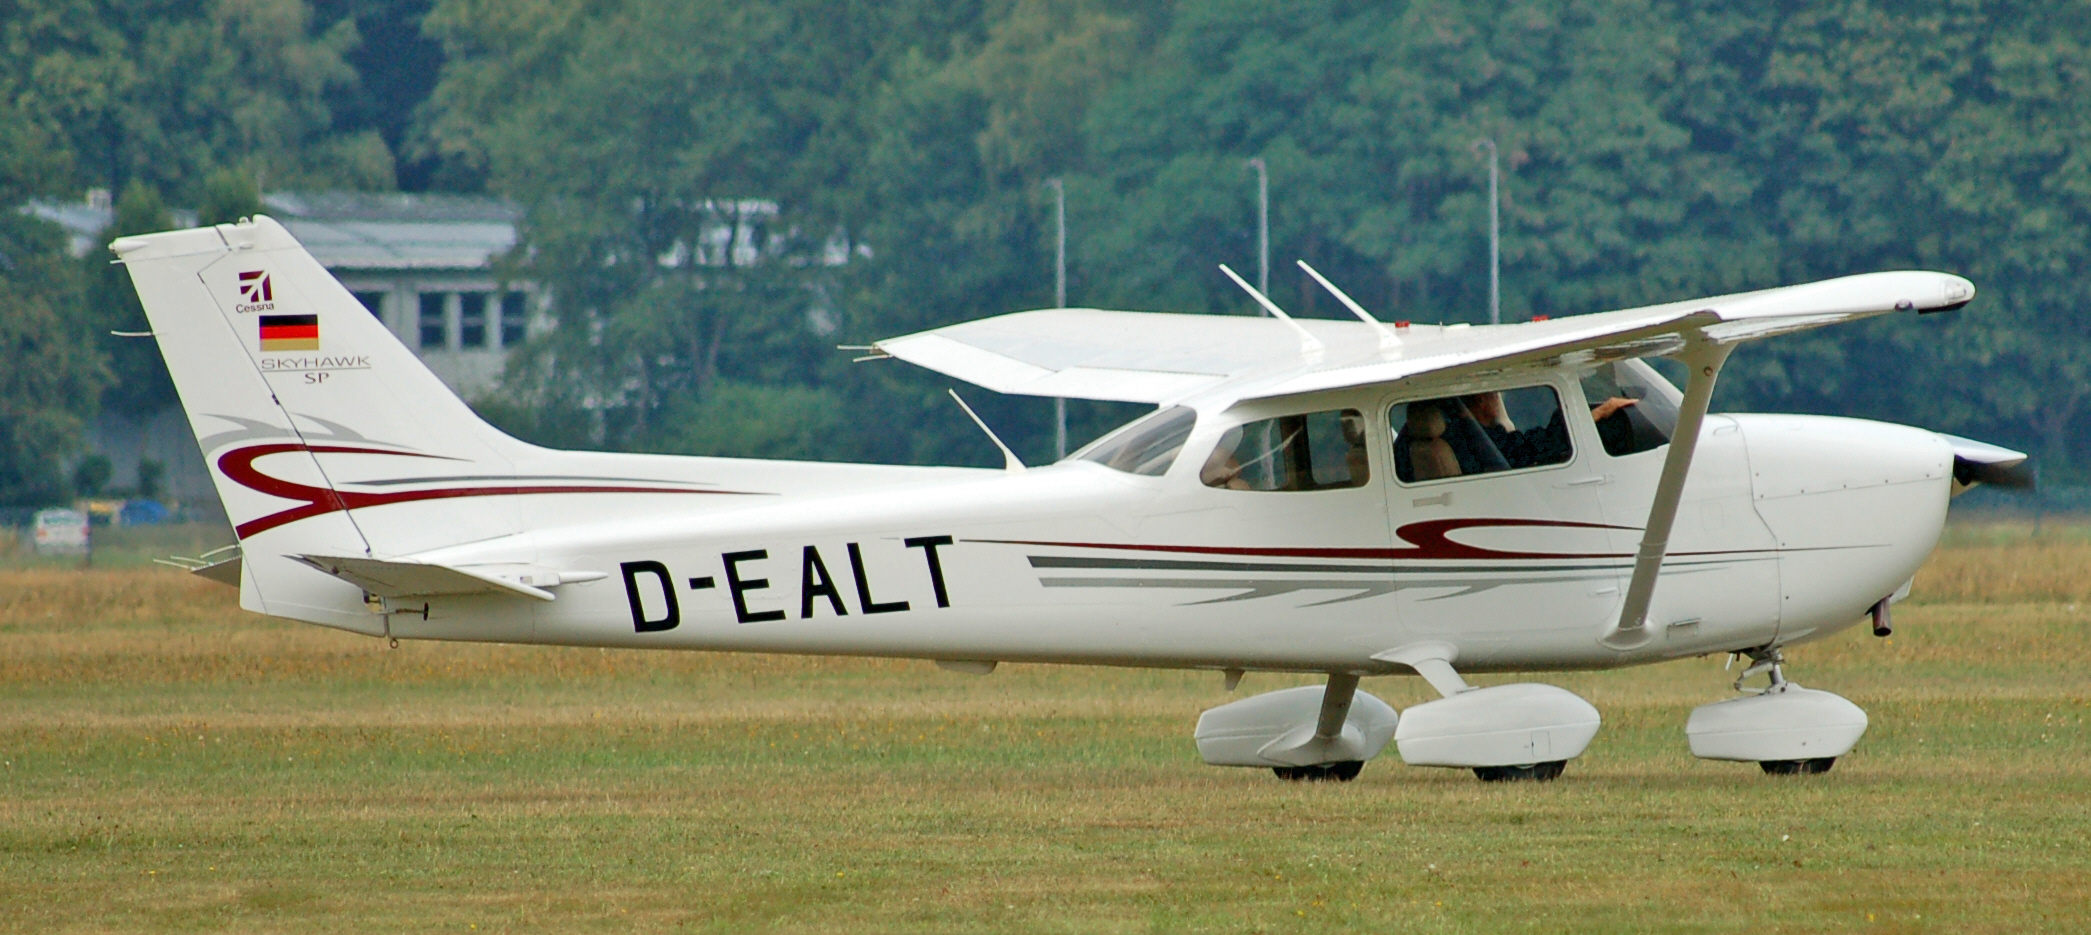 Cessna 172 Skyhawk (D-EALT) 03